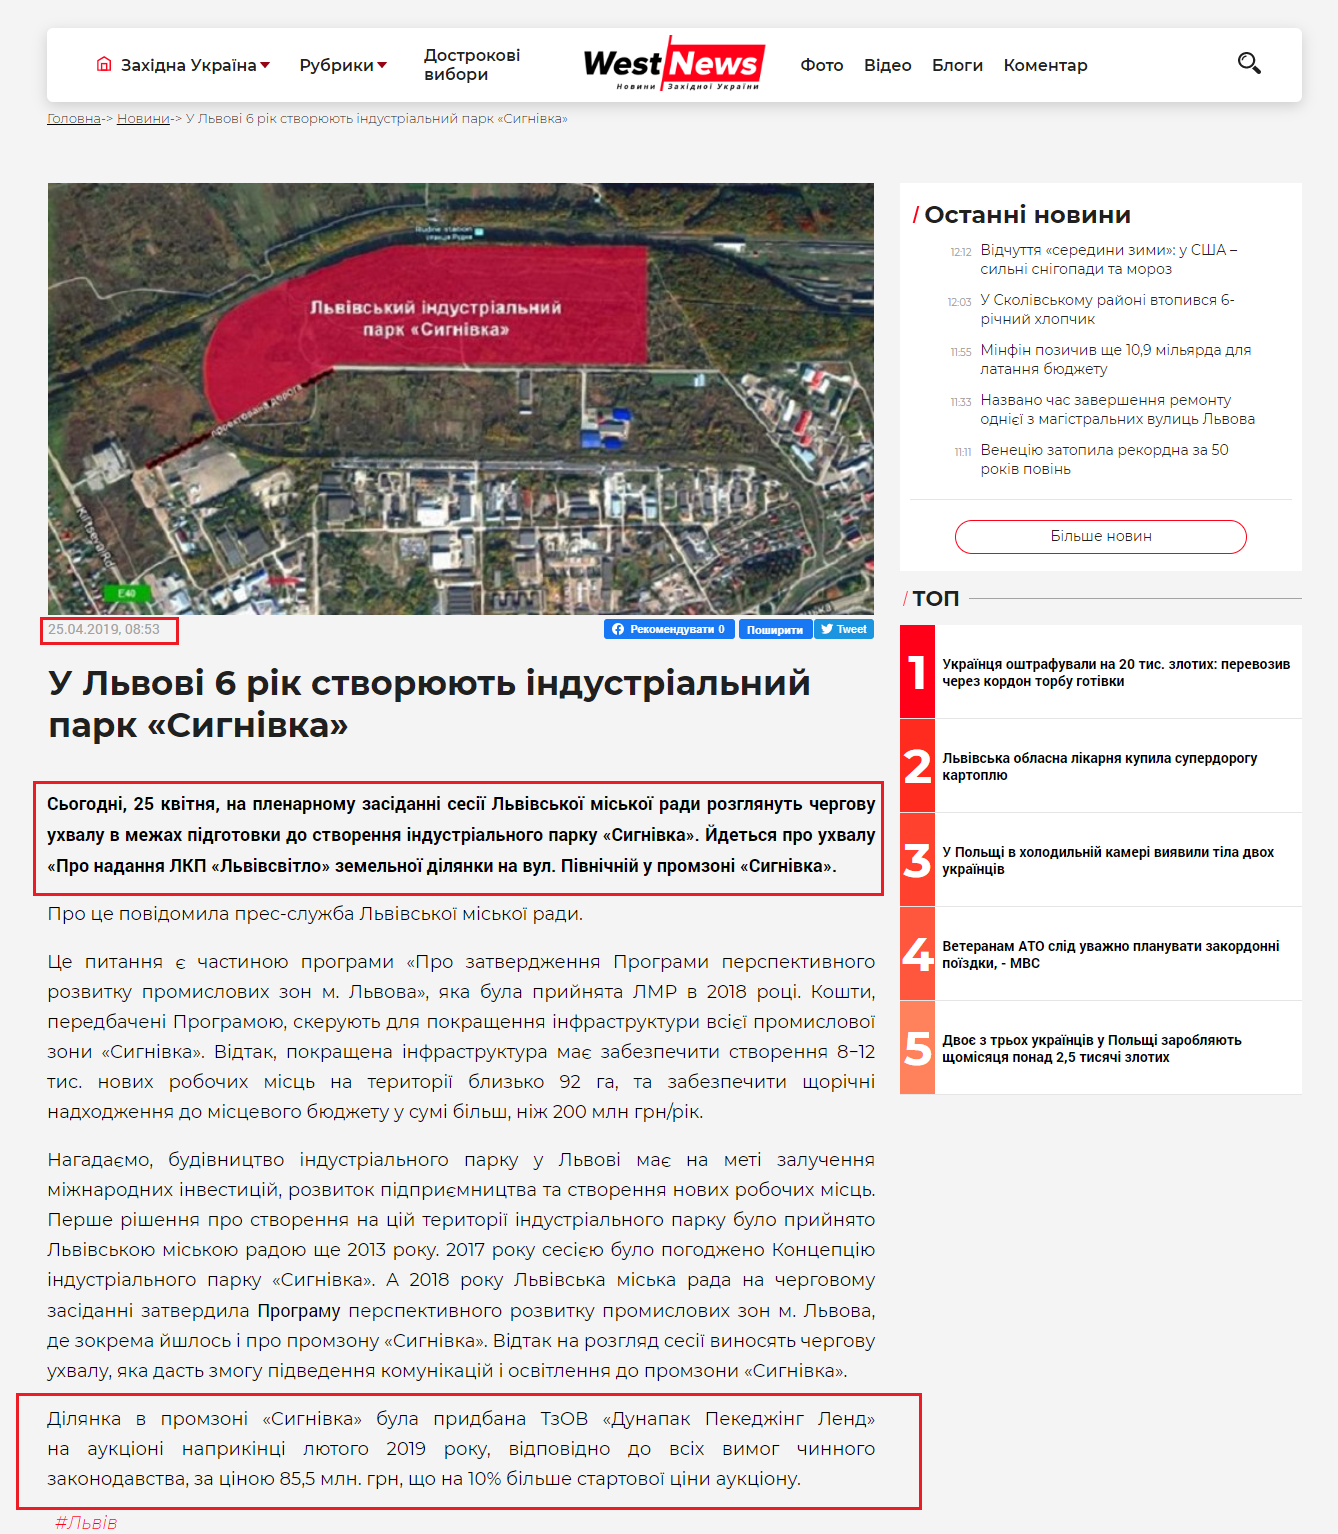 https://westnews.info/news/U-Lvovi-6-rik-stvoryuyut-industrialnij-park-Signivka.html